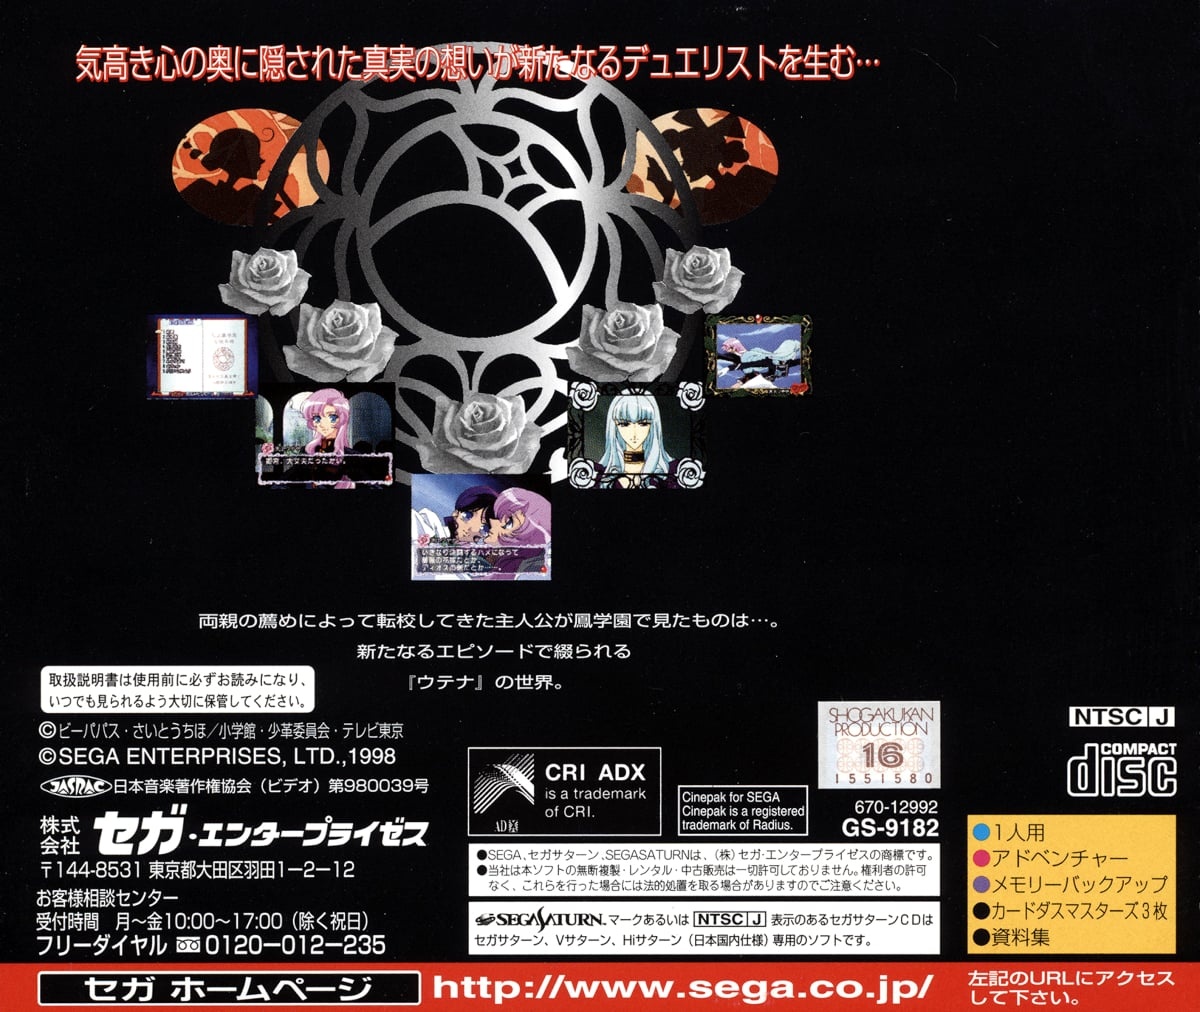 Capa do jogo Shoujo Kakumei Utena: Itsuka Kakumei Sareru Monogatari